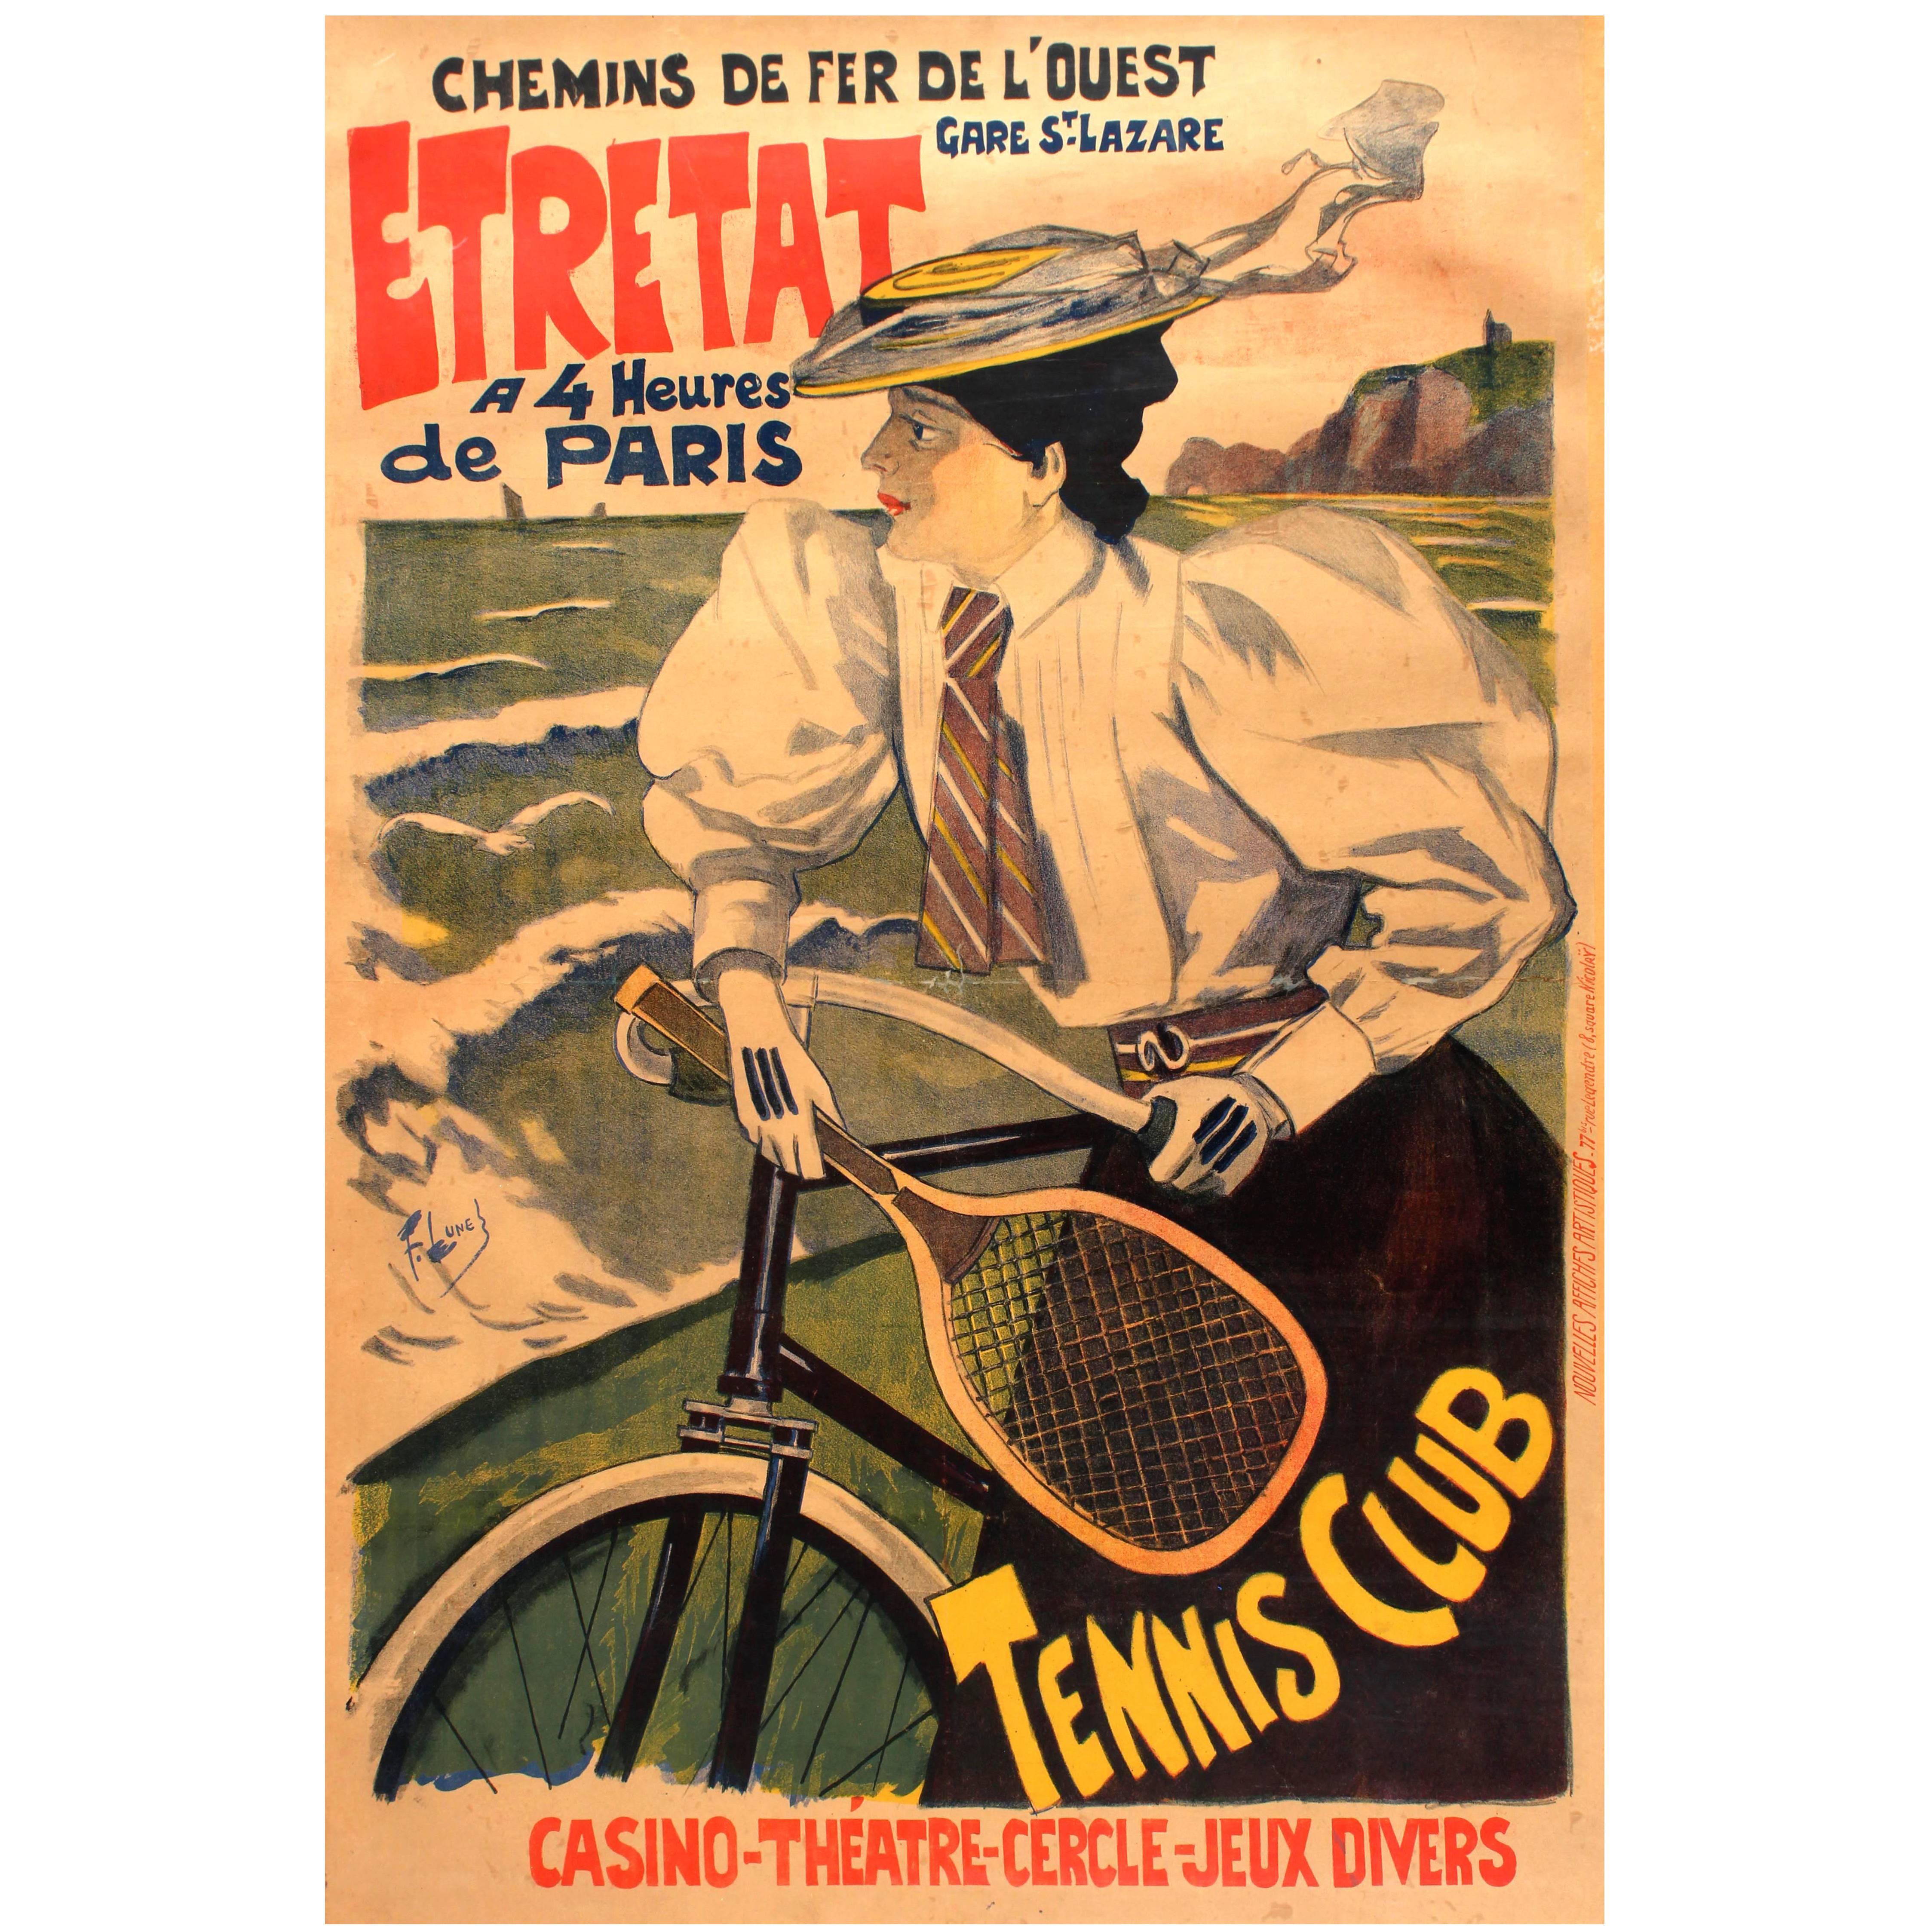 Original Antique Chemins De Fer De L'Ouest Paris Etretat Railway Poster: Tennis For Sale